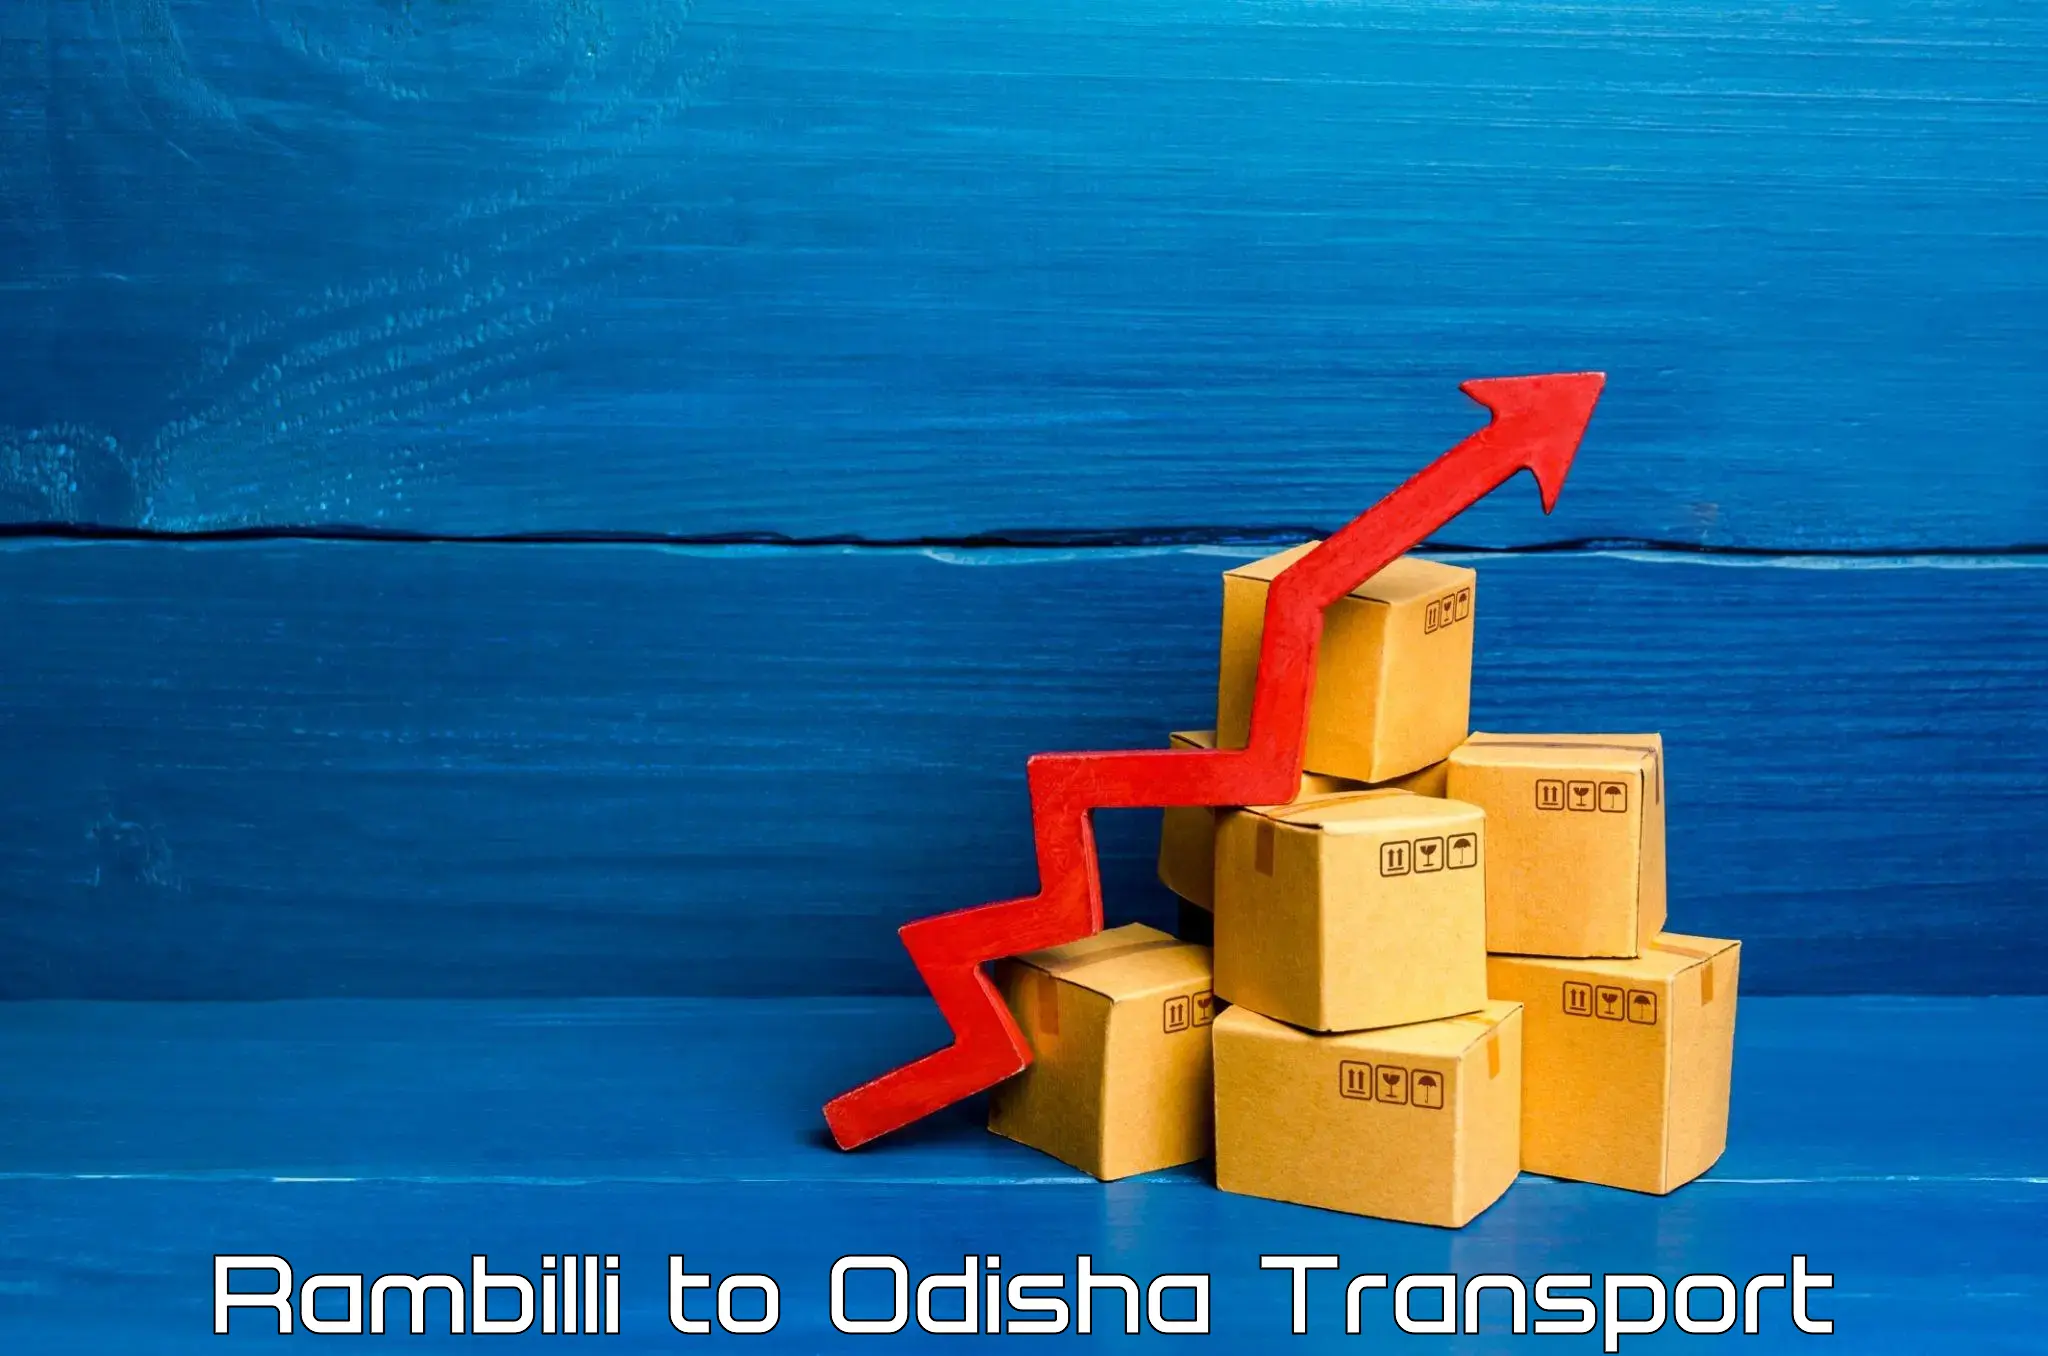 Domestic transport services Rambilli to Galleri